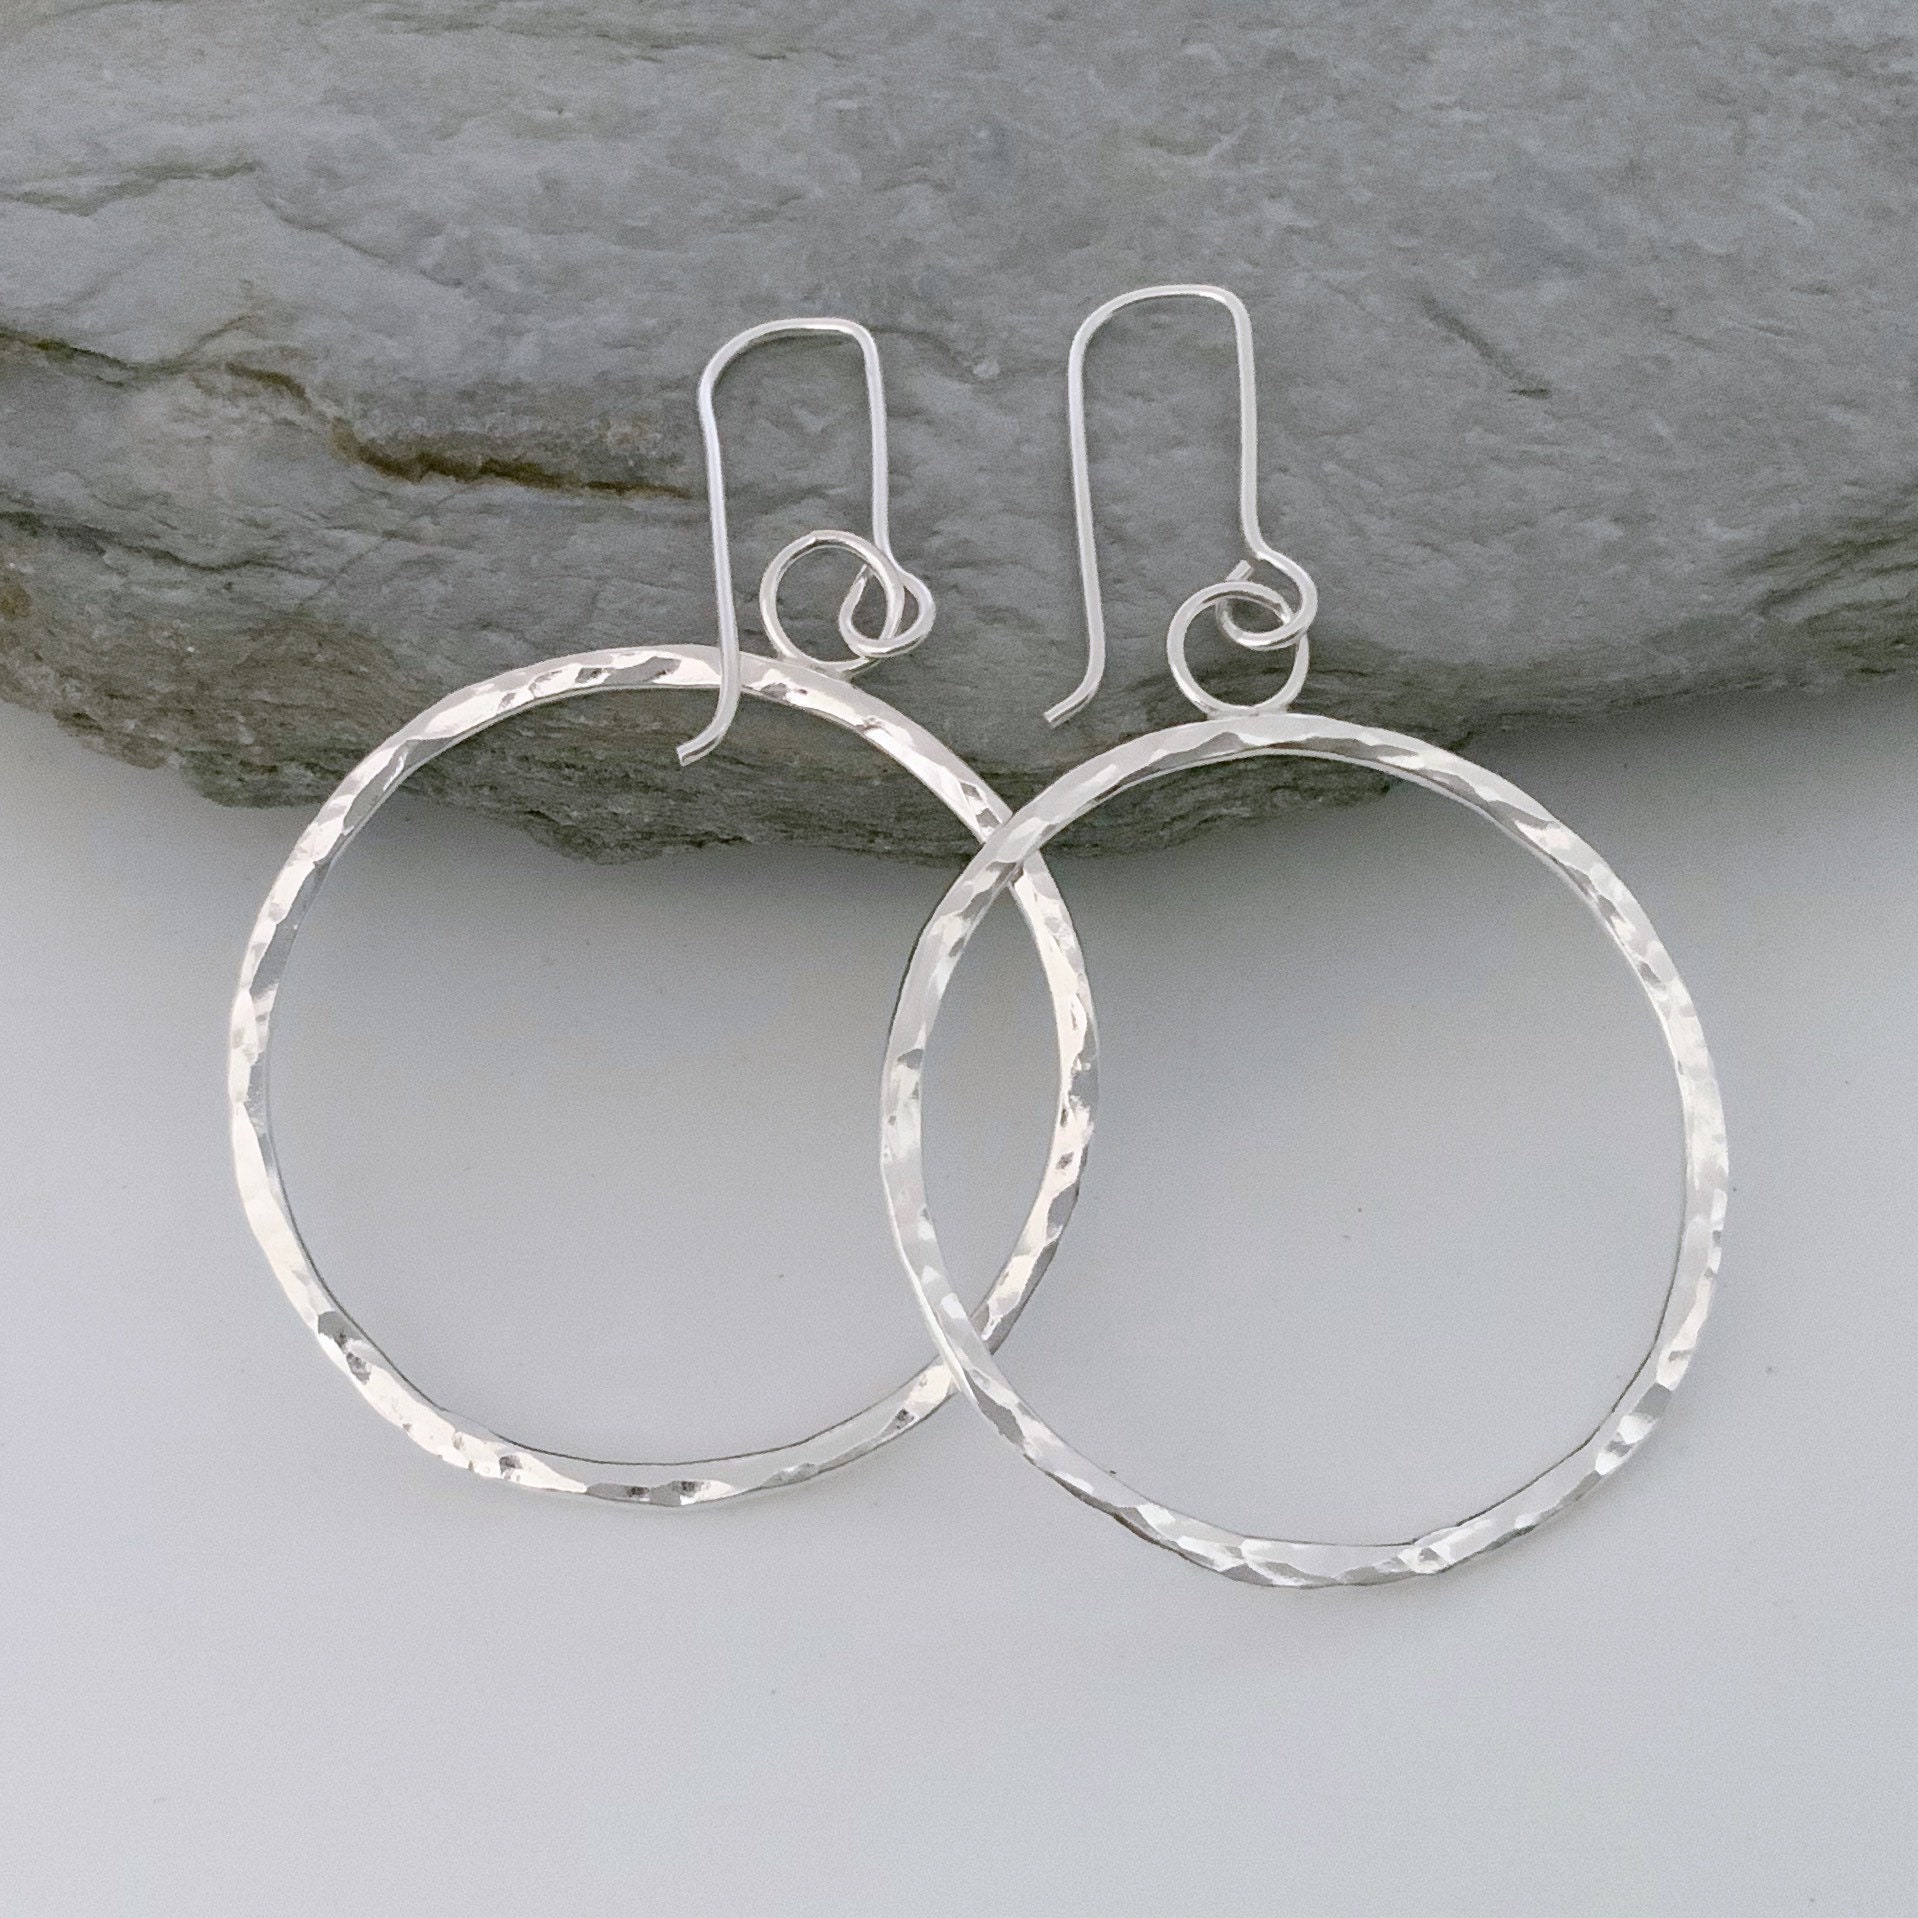 Solid Silver Hoop Earrings, Large Round Hammered Dangly Earrings